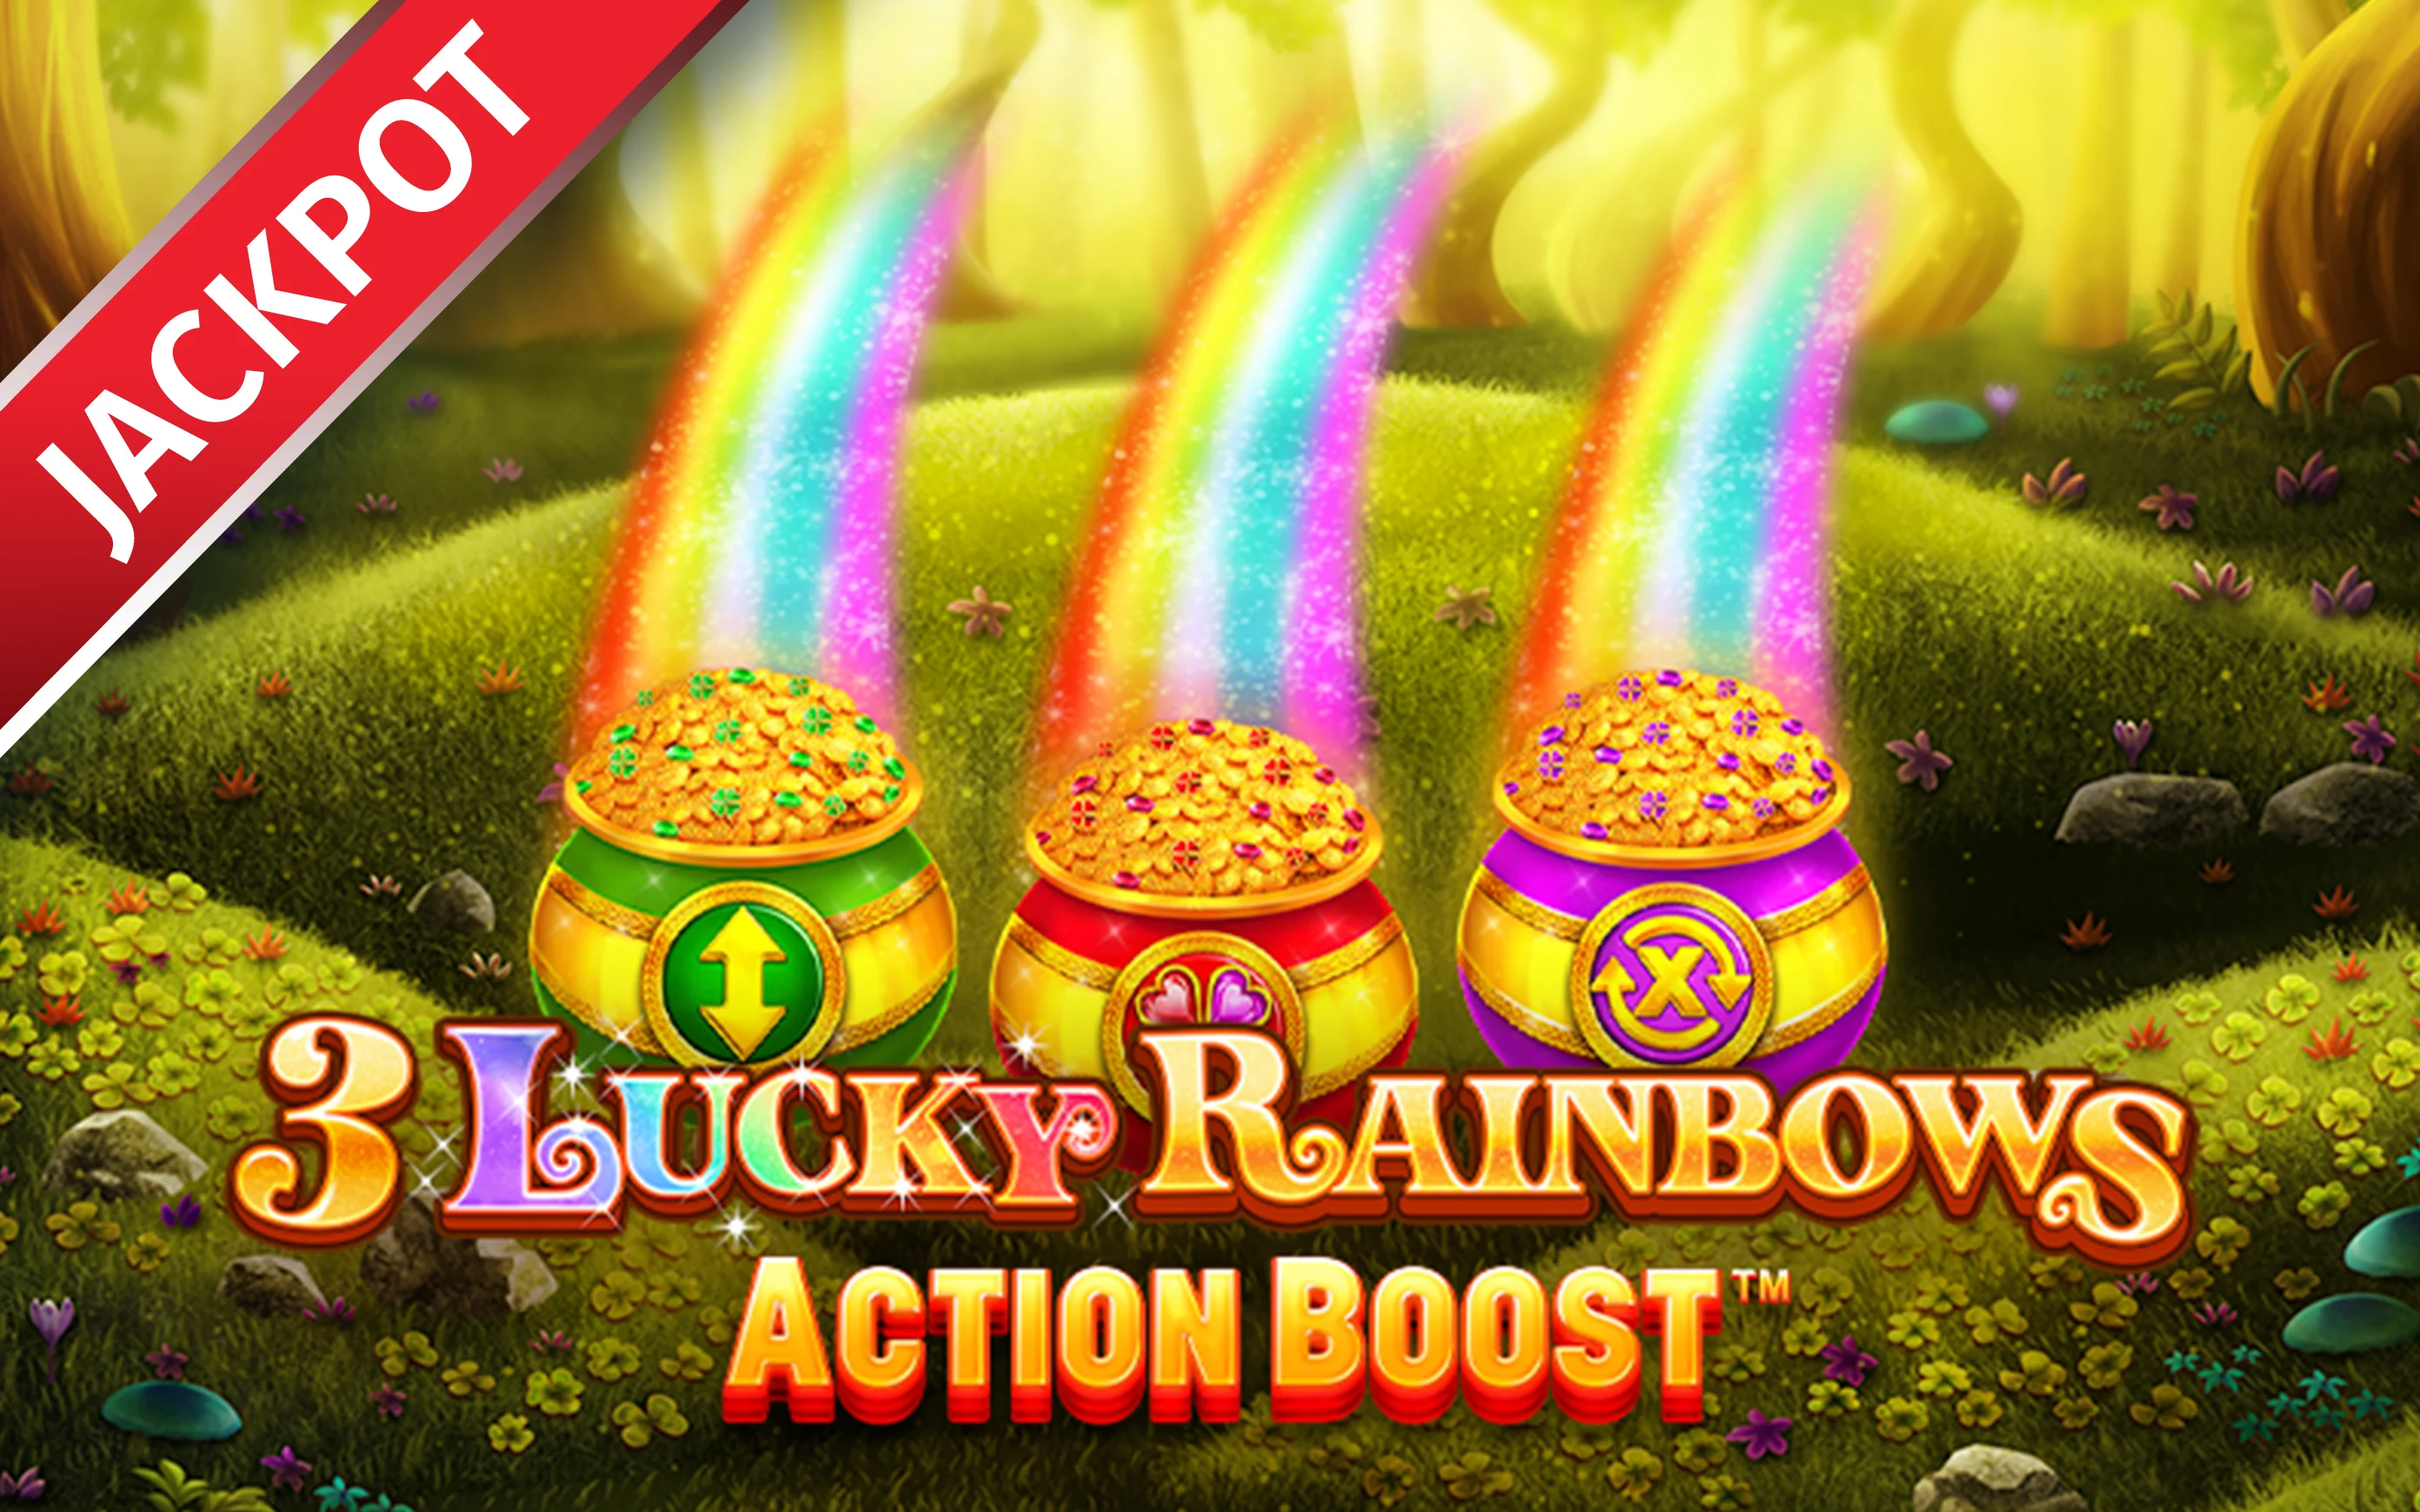 เล่น Action Boost ™ 3 Lucky Rainbows บนคาสิโนออนไลน์ Starcasino.be